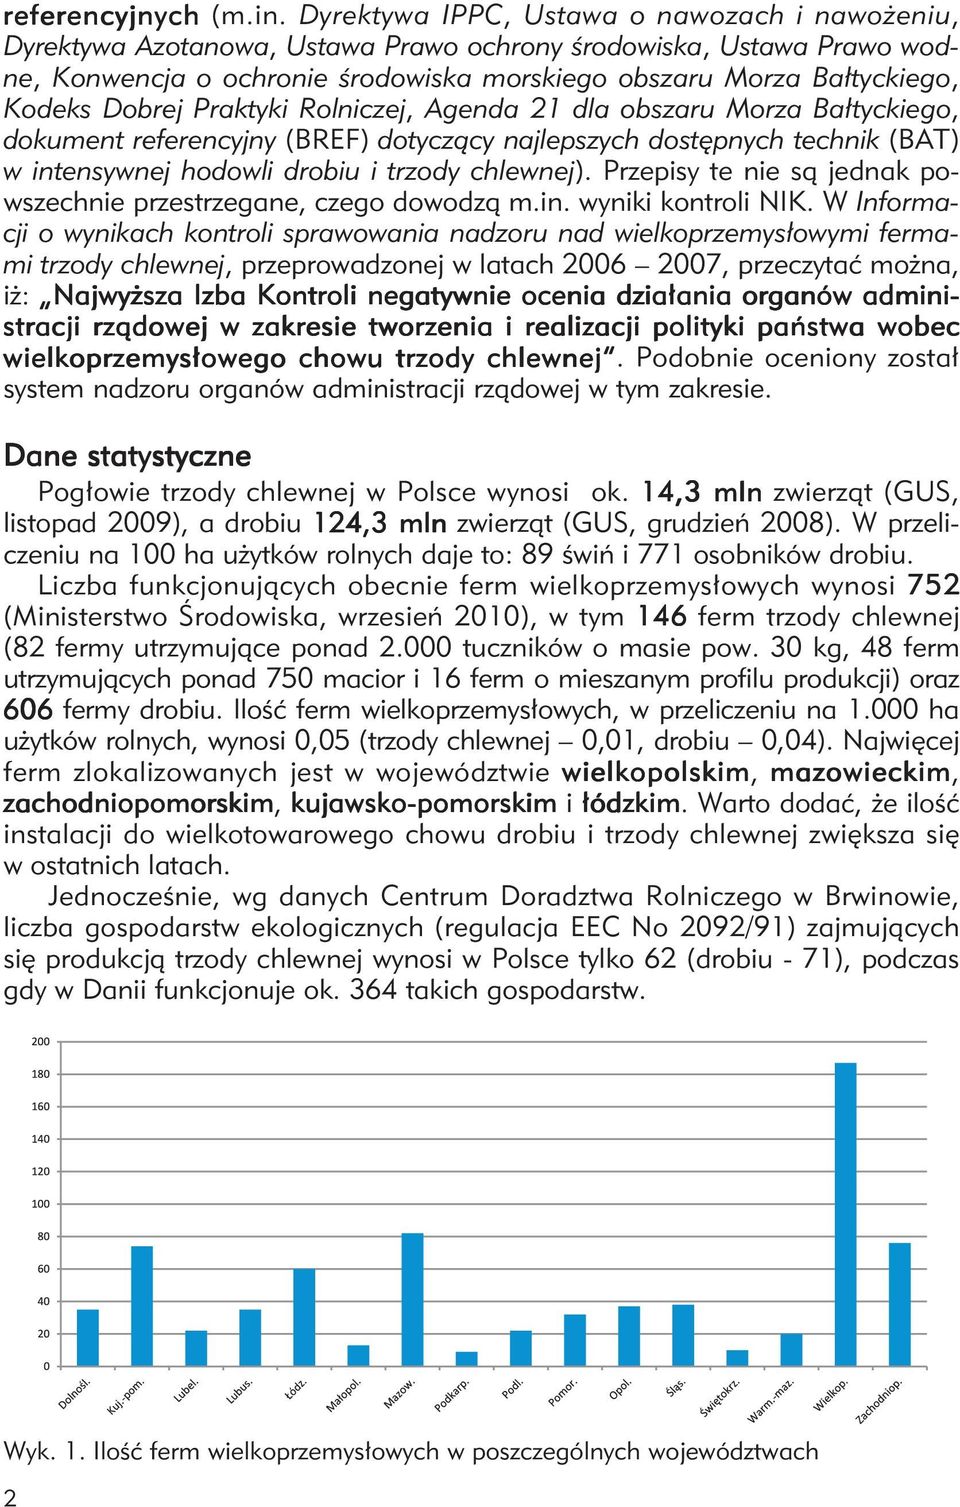 Dobrej Praktyki Rolniczej, Agenda 21 dla obszaru Morza Bałtyckiego, dokument referencyjny (BREF) dotyczący najlepszych dostępnych technik (BAT) w intensywnej hodowli drobiu i trzody chlewnej).